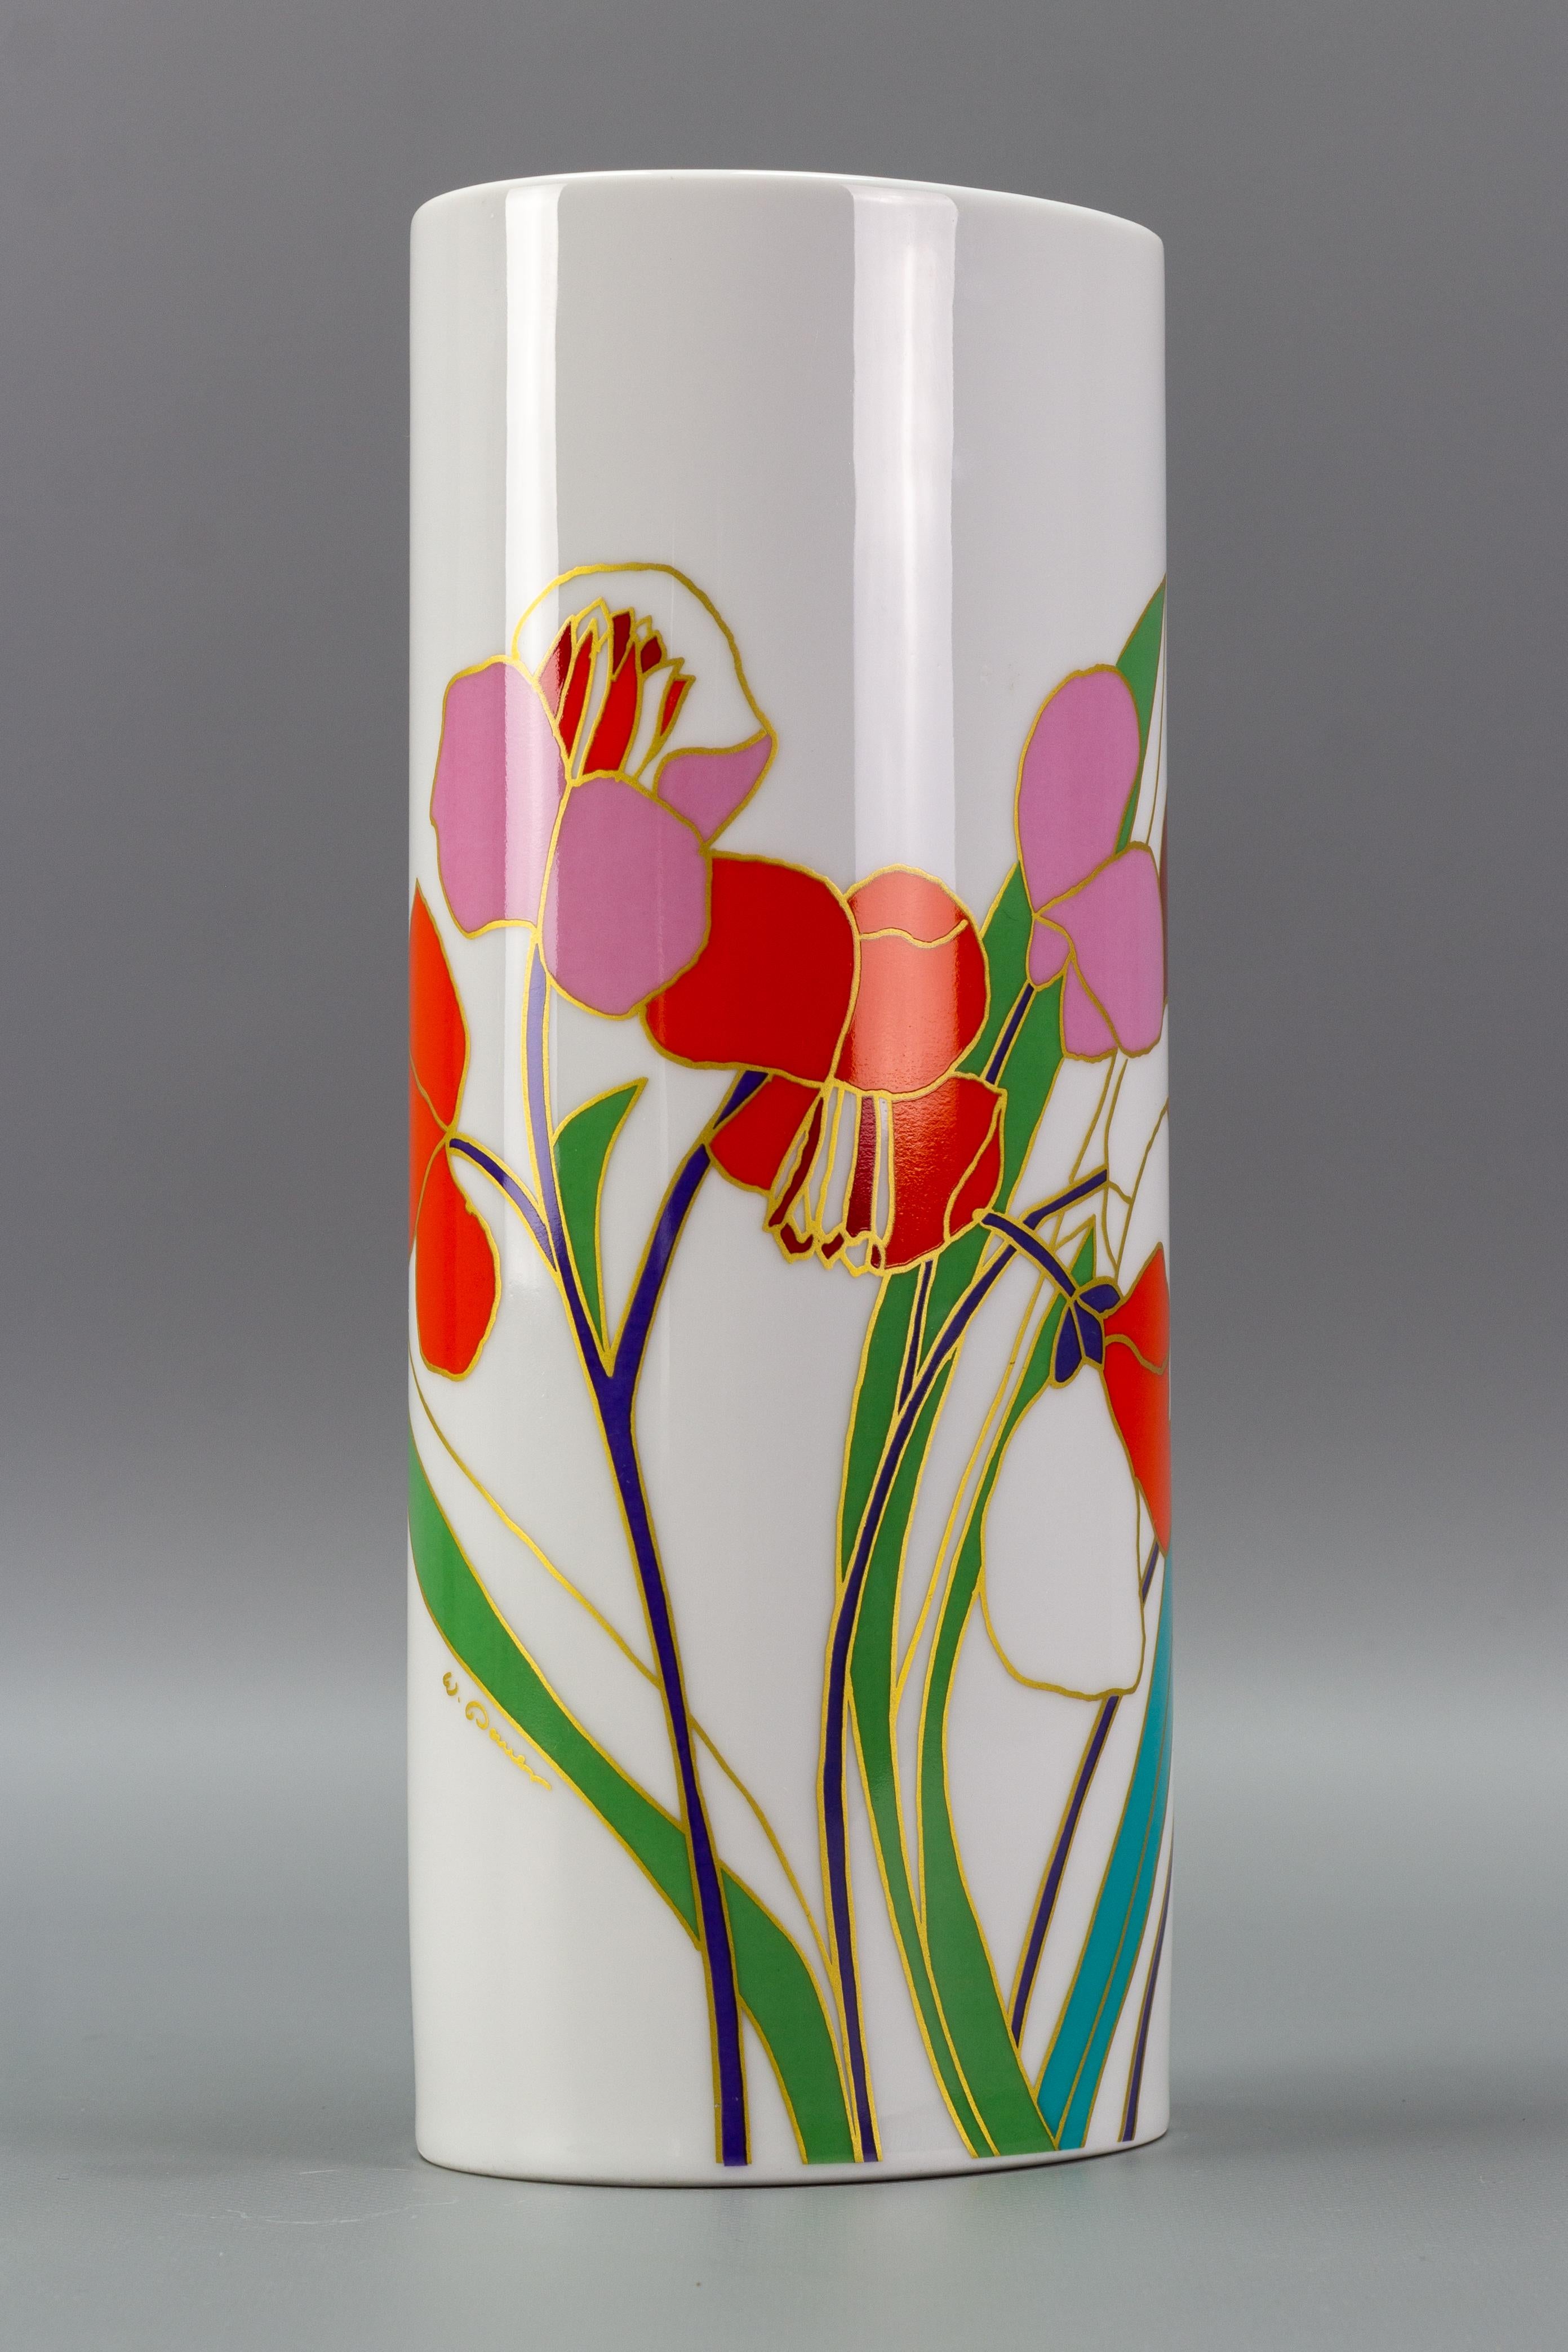 Vase en porcelaine Rosenthal peint à la main, conçu par Wolf Bauer, ligne Studio-Linie, Allemagne, années 1970-1980. 
Ce vase en porcelaine blanche, de forme cylindrique, est orné de fleurs et de feuilles aux couleurs vives, soulignées d'or.
Le vase